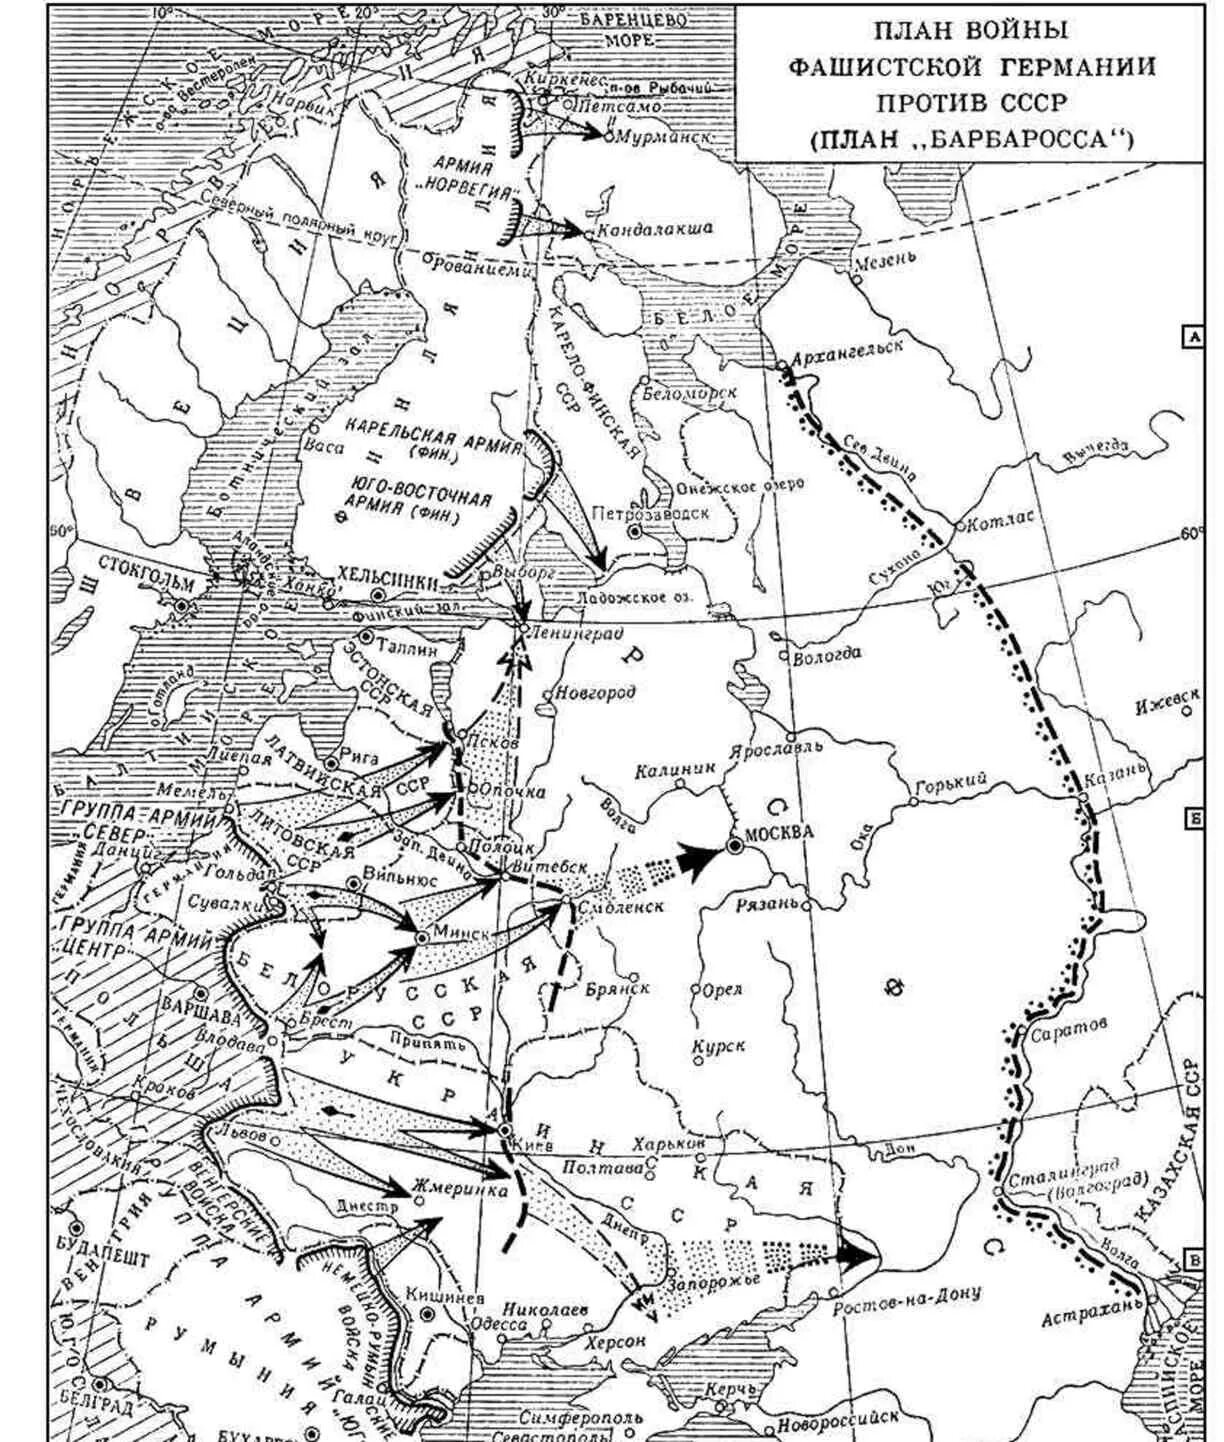 Напишите название плана изображенного на карте. Карта 2 мировой войны план Барбаросса. План Барбаросса карта 1941. Карта ВОВ план Барбаросса.